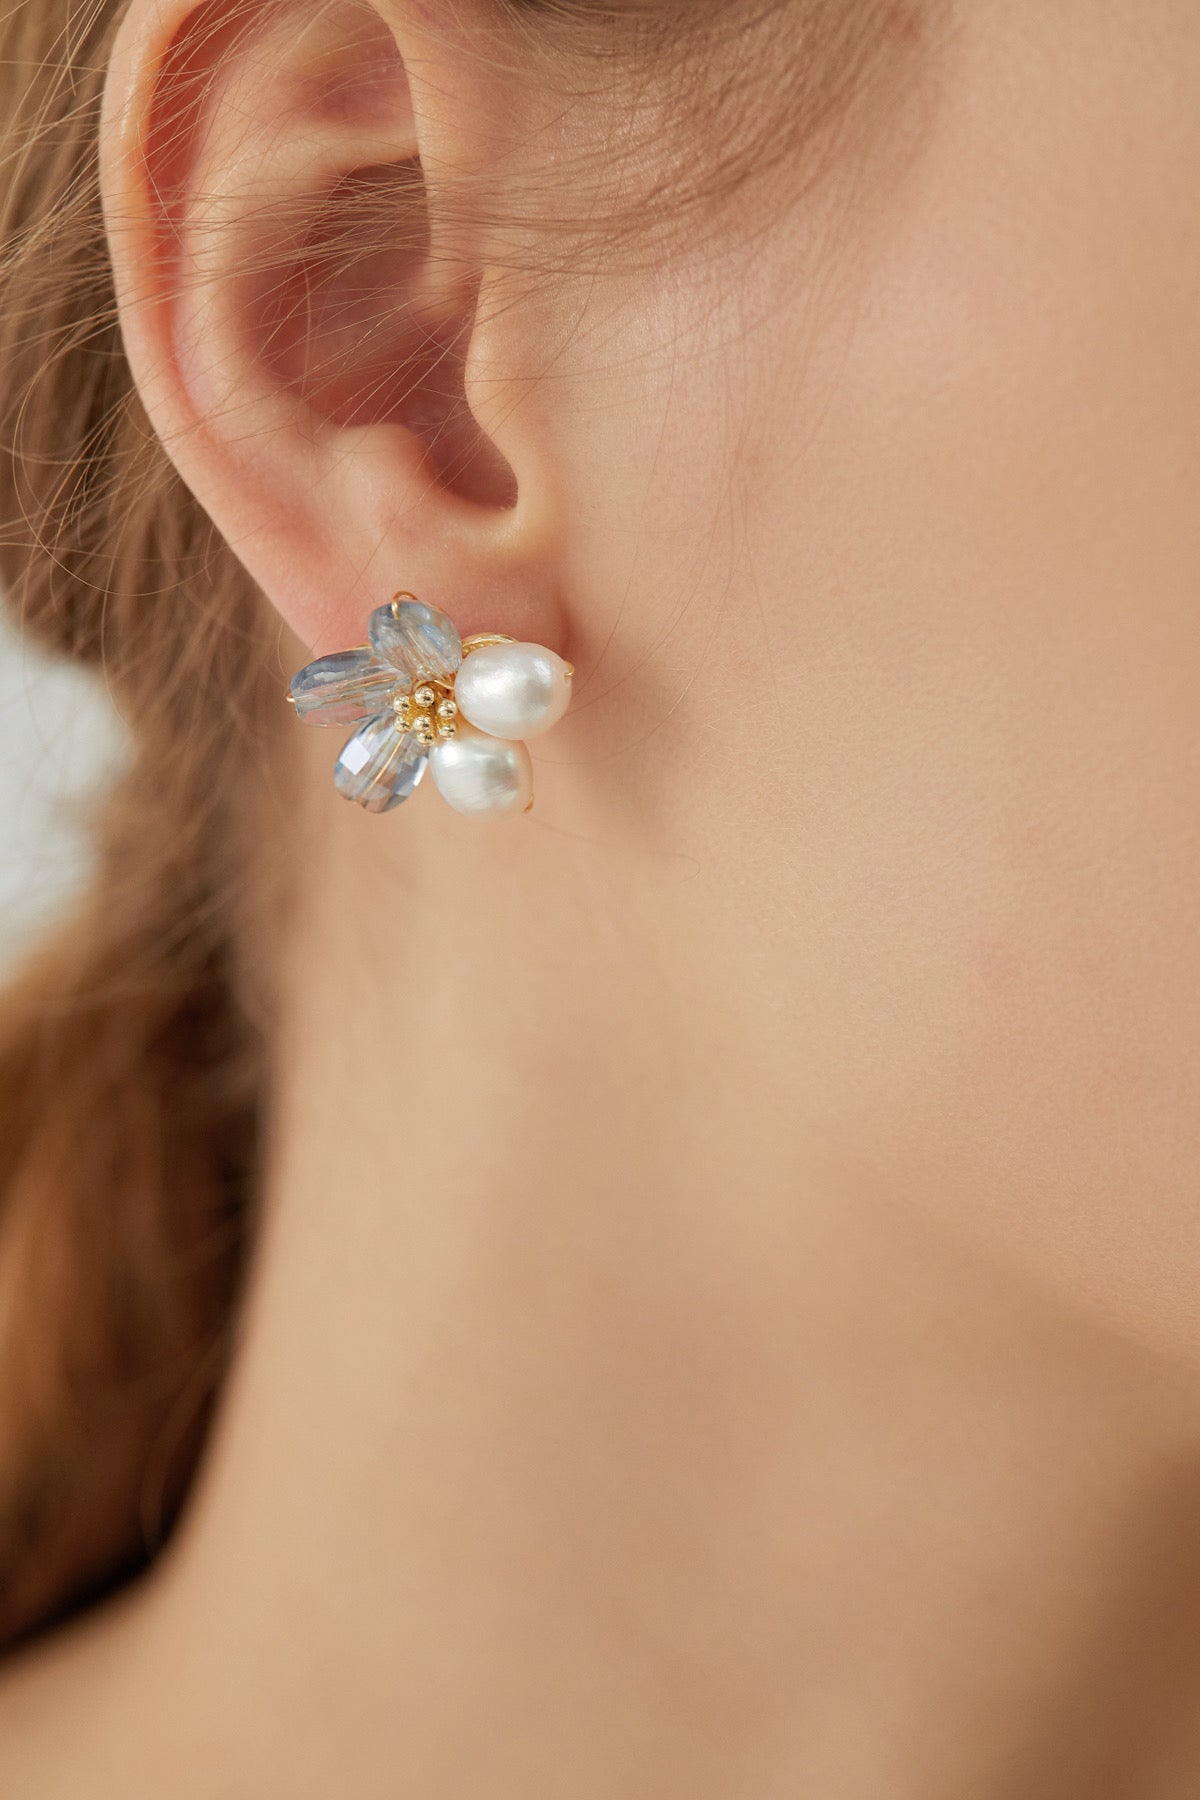 SKYE Shop Chic Modern Elegant Classy Women Jewelry French Parisian Minimalist Kira Cystal Flower Freshwater Pearl Earrings 2